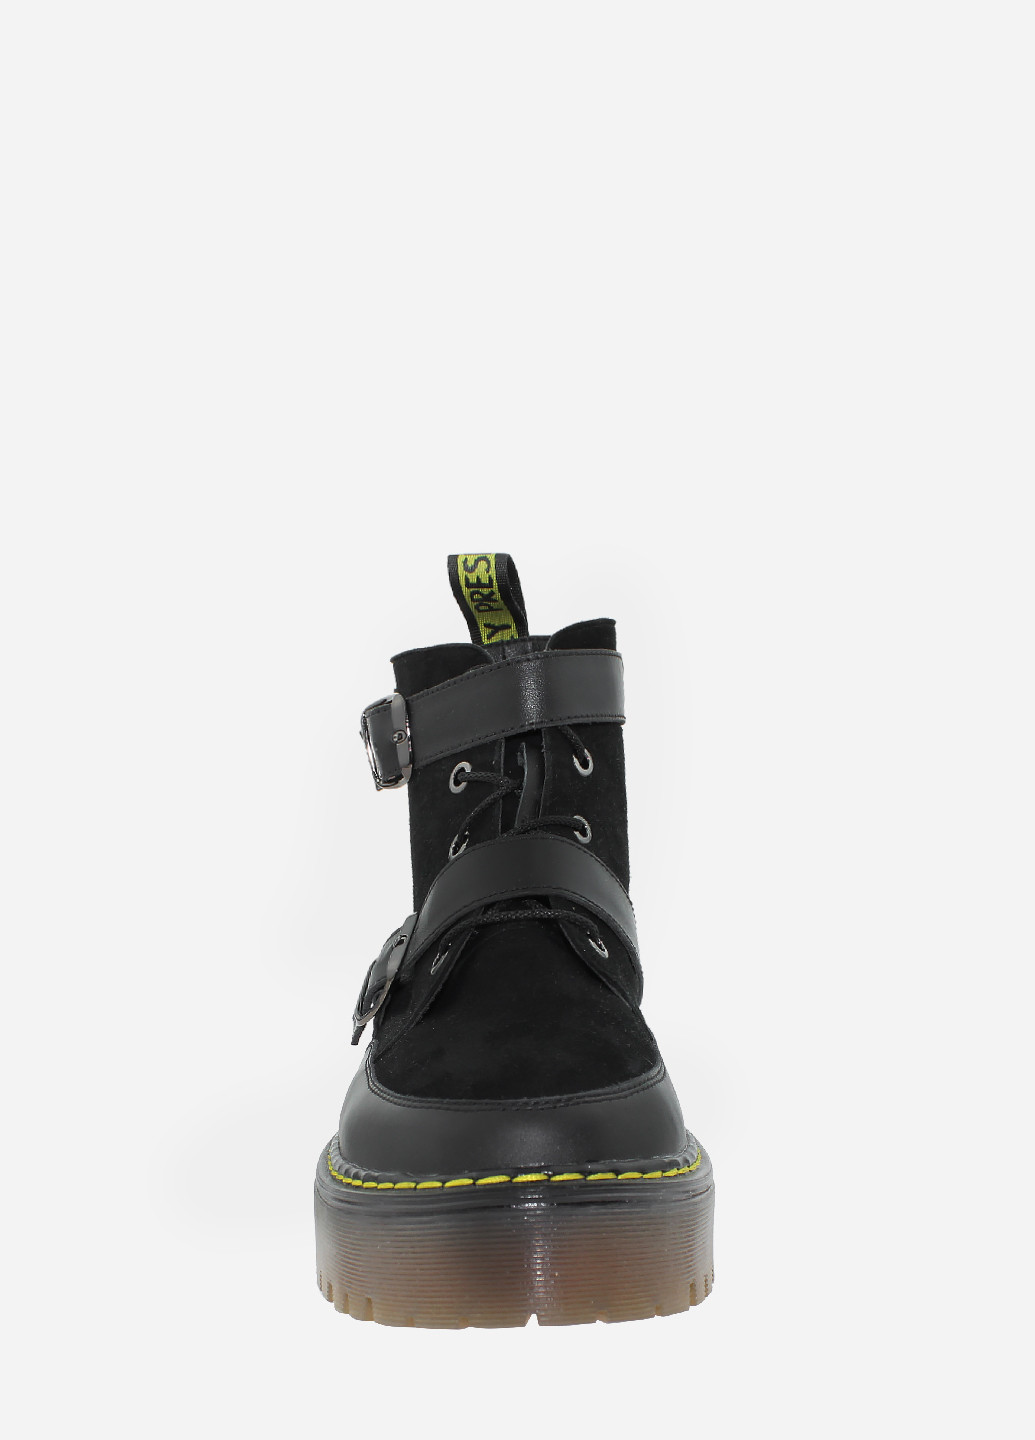 Осенние ботинки rcv6598 черный Carvallio из натуральной замши